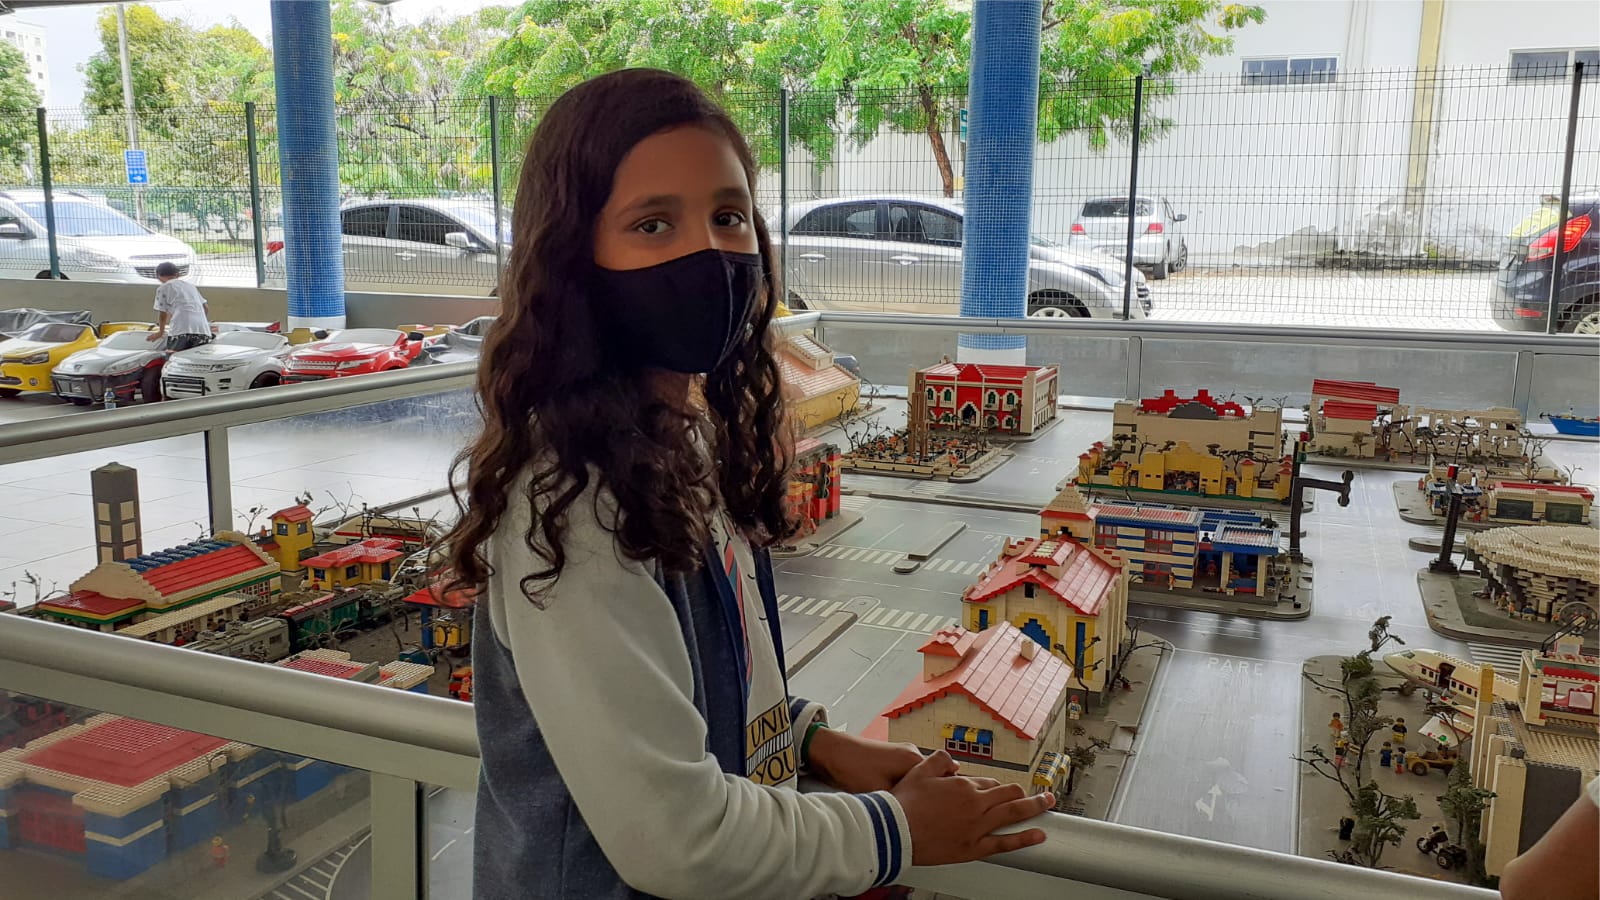 Projeto de Extensão: jogos e brincadeiras populares na Escola - Campus  Bento Gonçalves